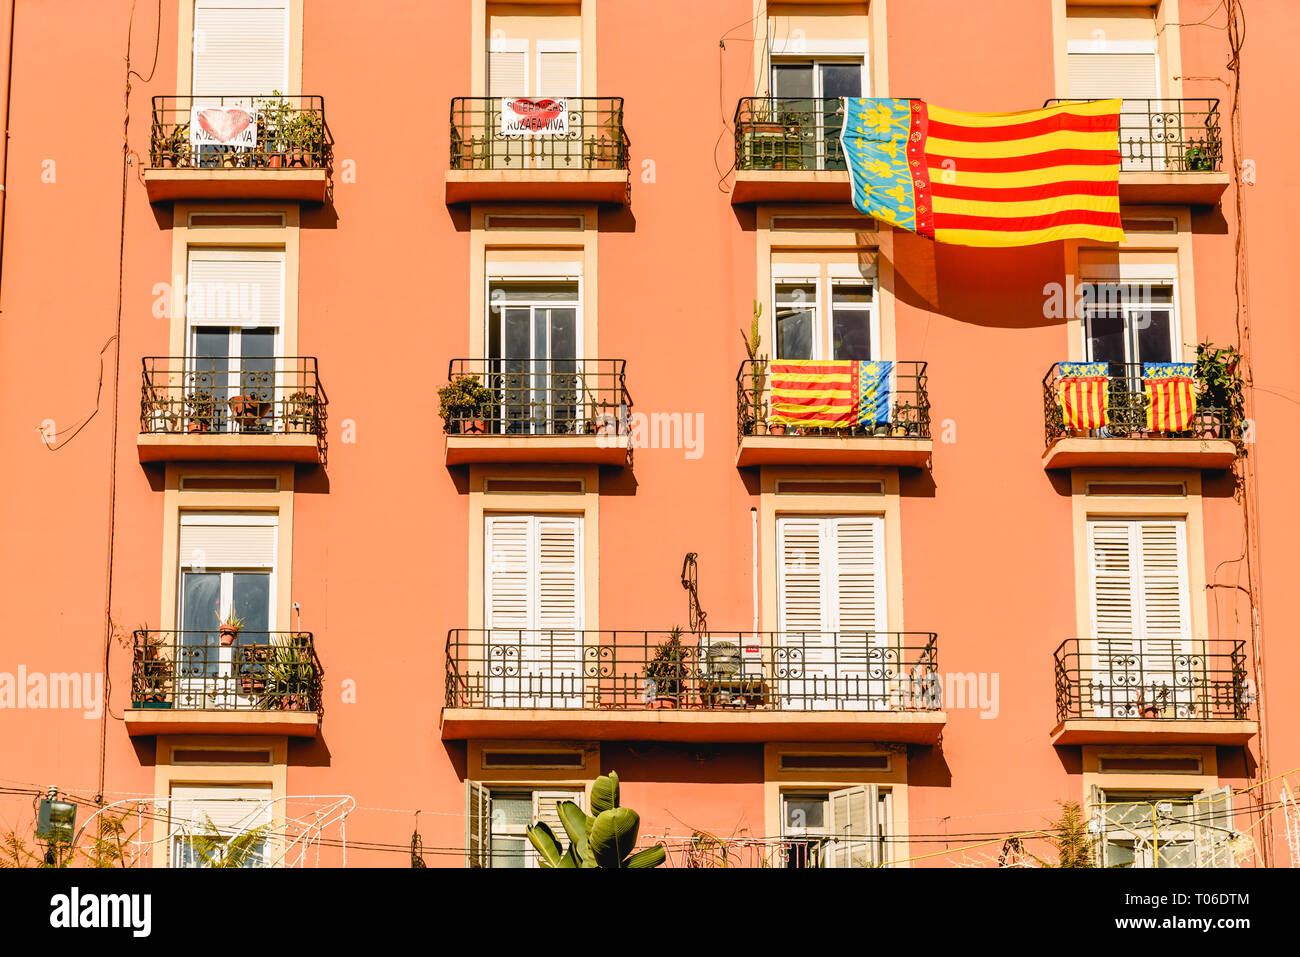 Valencia, España - 16 de marzo de 2019: la fachada de un edificio con un gran señera, la bandera de Valencia, colgando de un balcón, durante la celebración de la fal Foto de stock